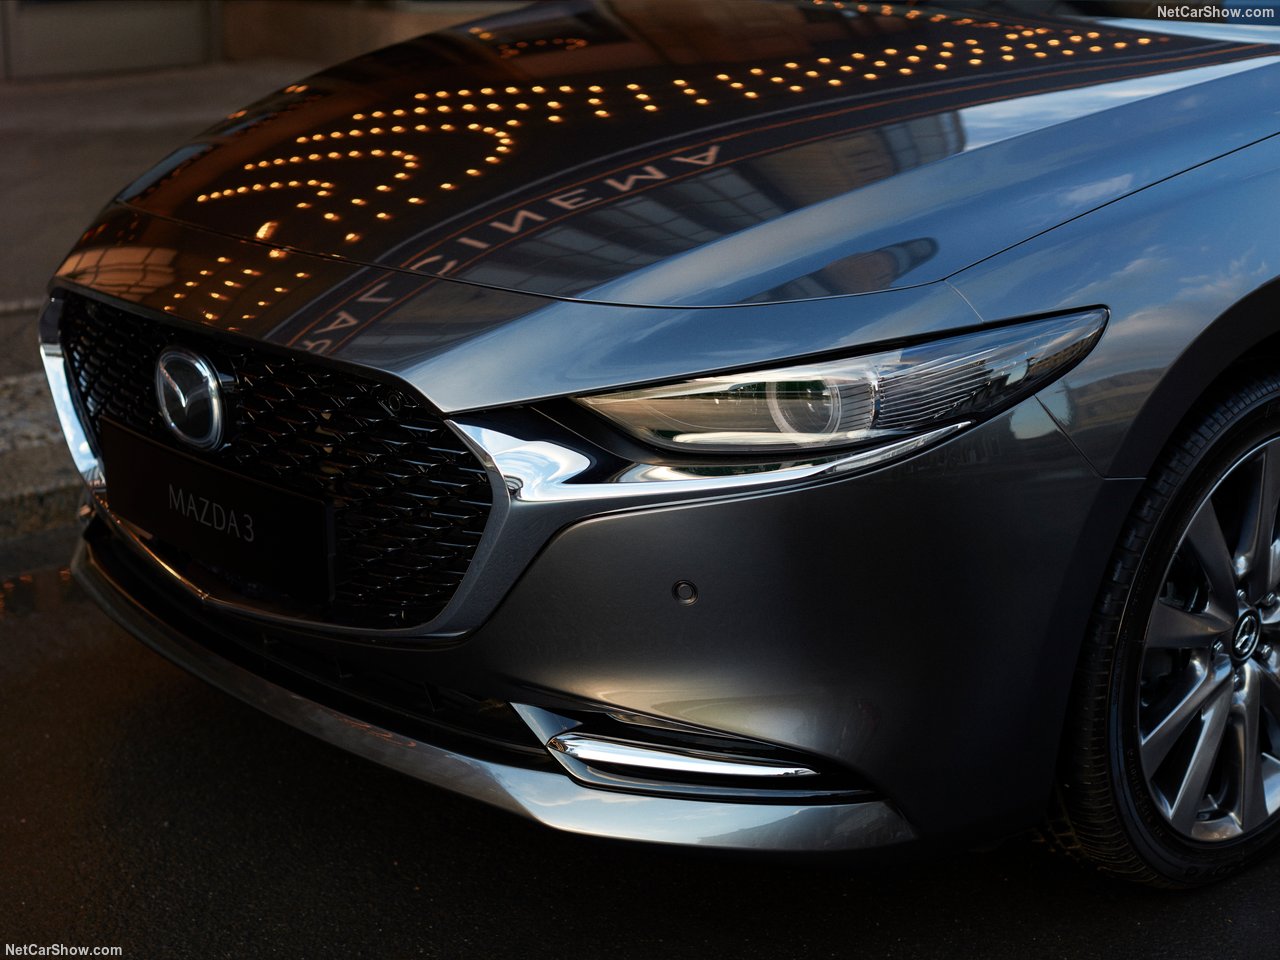 2019 Mazda 3 sedan ve Mazda 3 hatchback Los Angeles Otomobil Fuarı’nda tanıtıldı